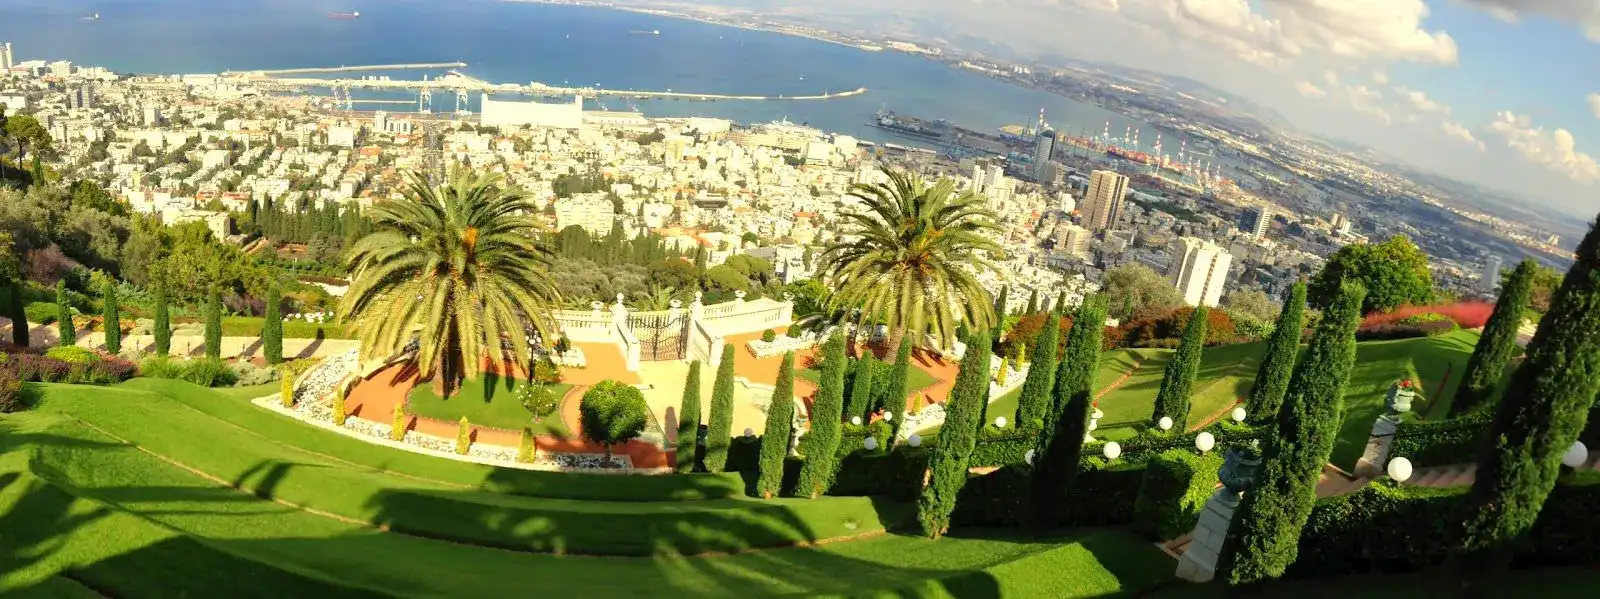 Palestine-Haifa-Bahai-Gardens-010.webp